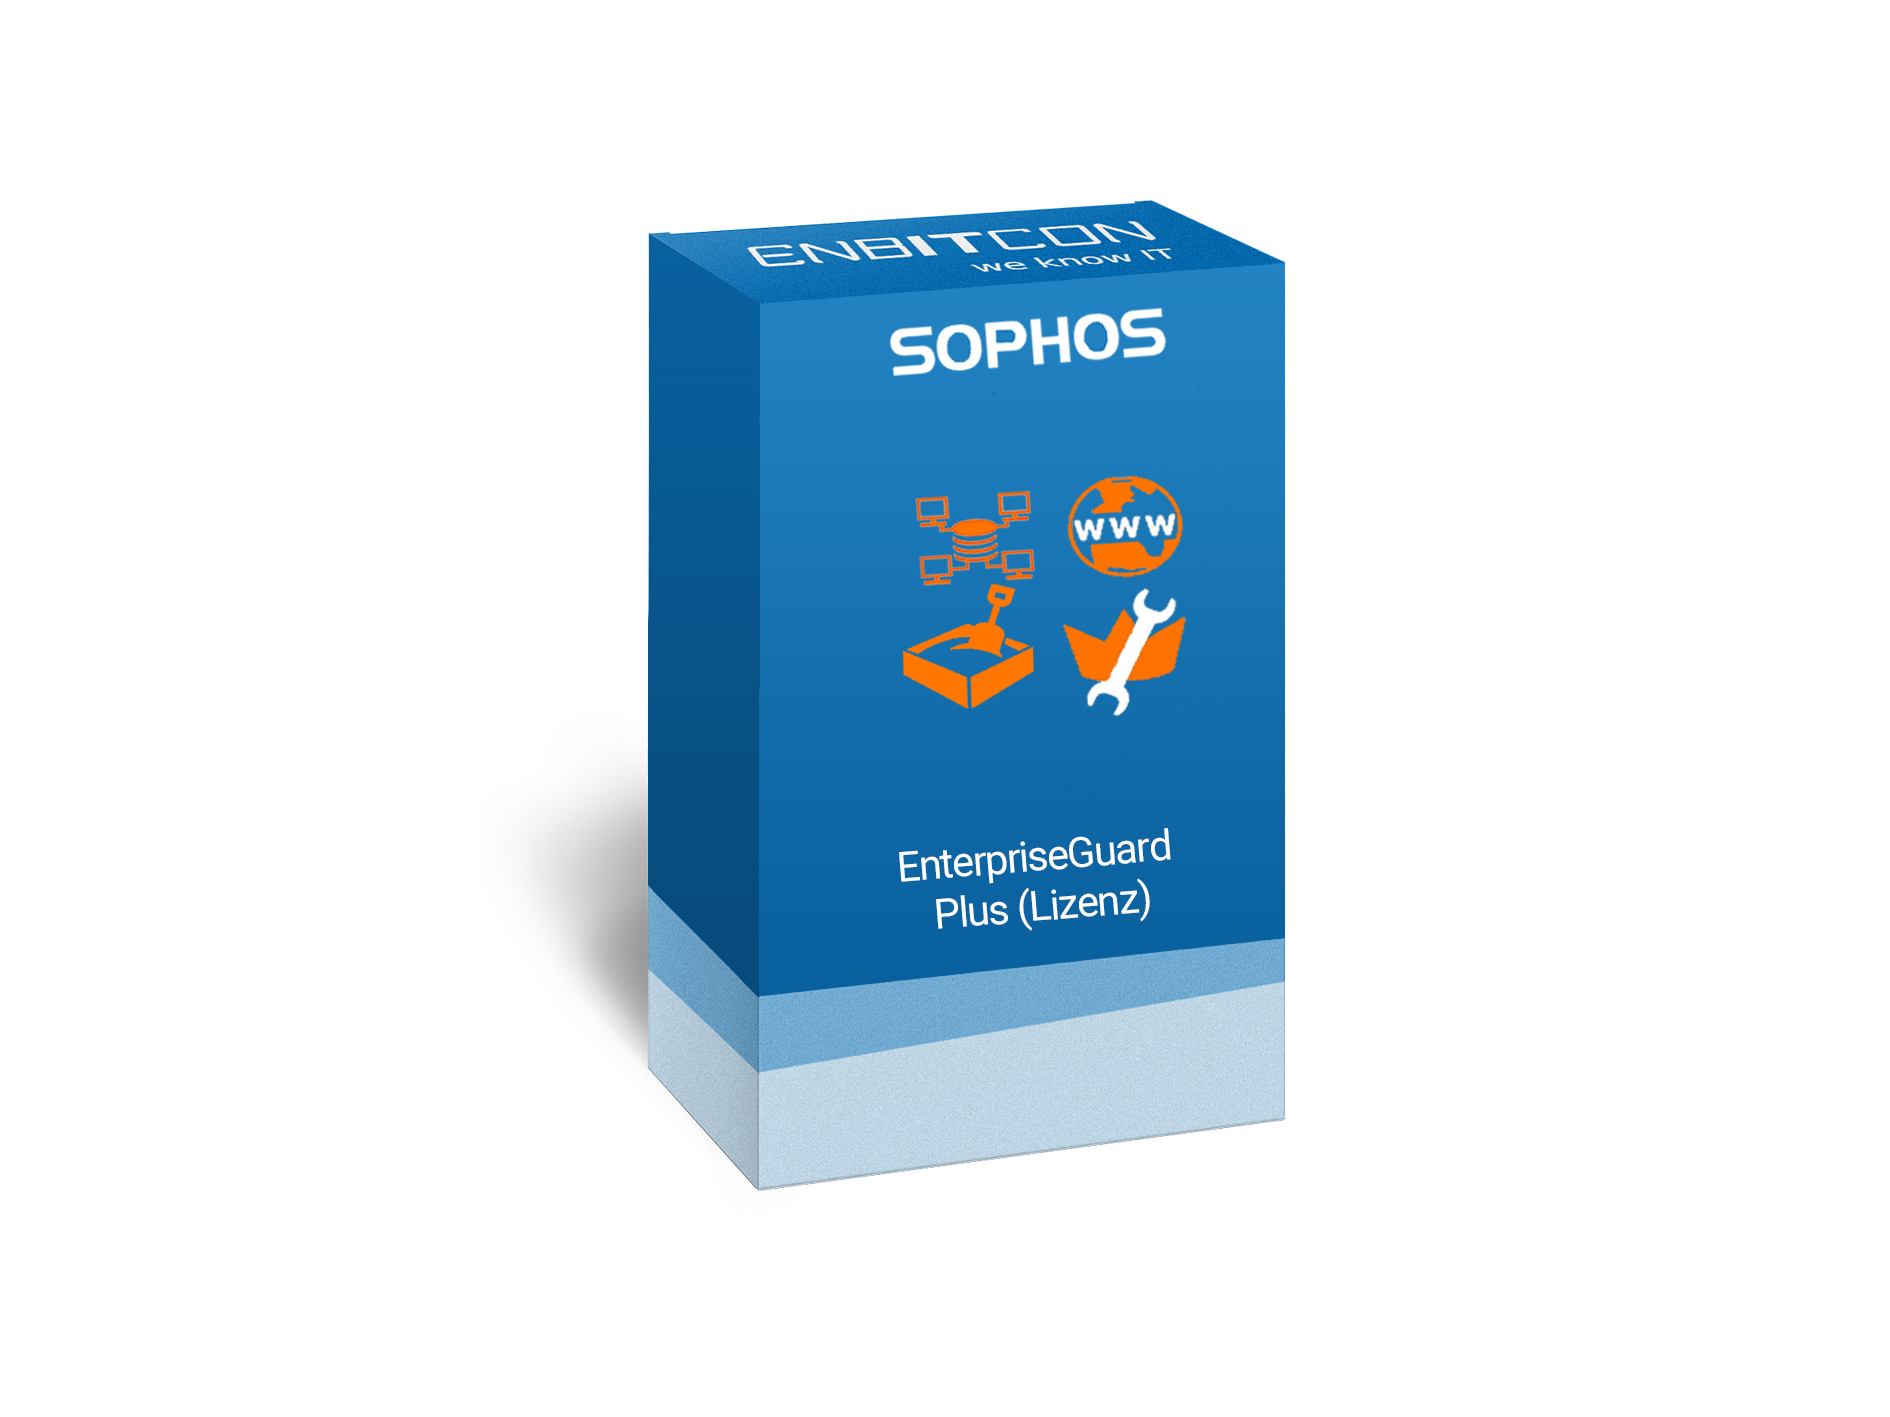 Sophos Enterprise Plus Guard Lizenz Vorschaubild bestehend aus einem blauen Schild, indem sich ein orangenes Computernetz, WWW, orangene Truhe und ein Schraubenschlüssel befinden